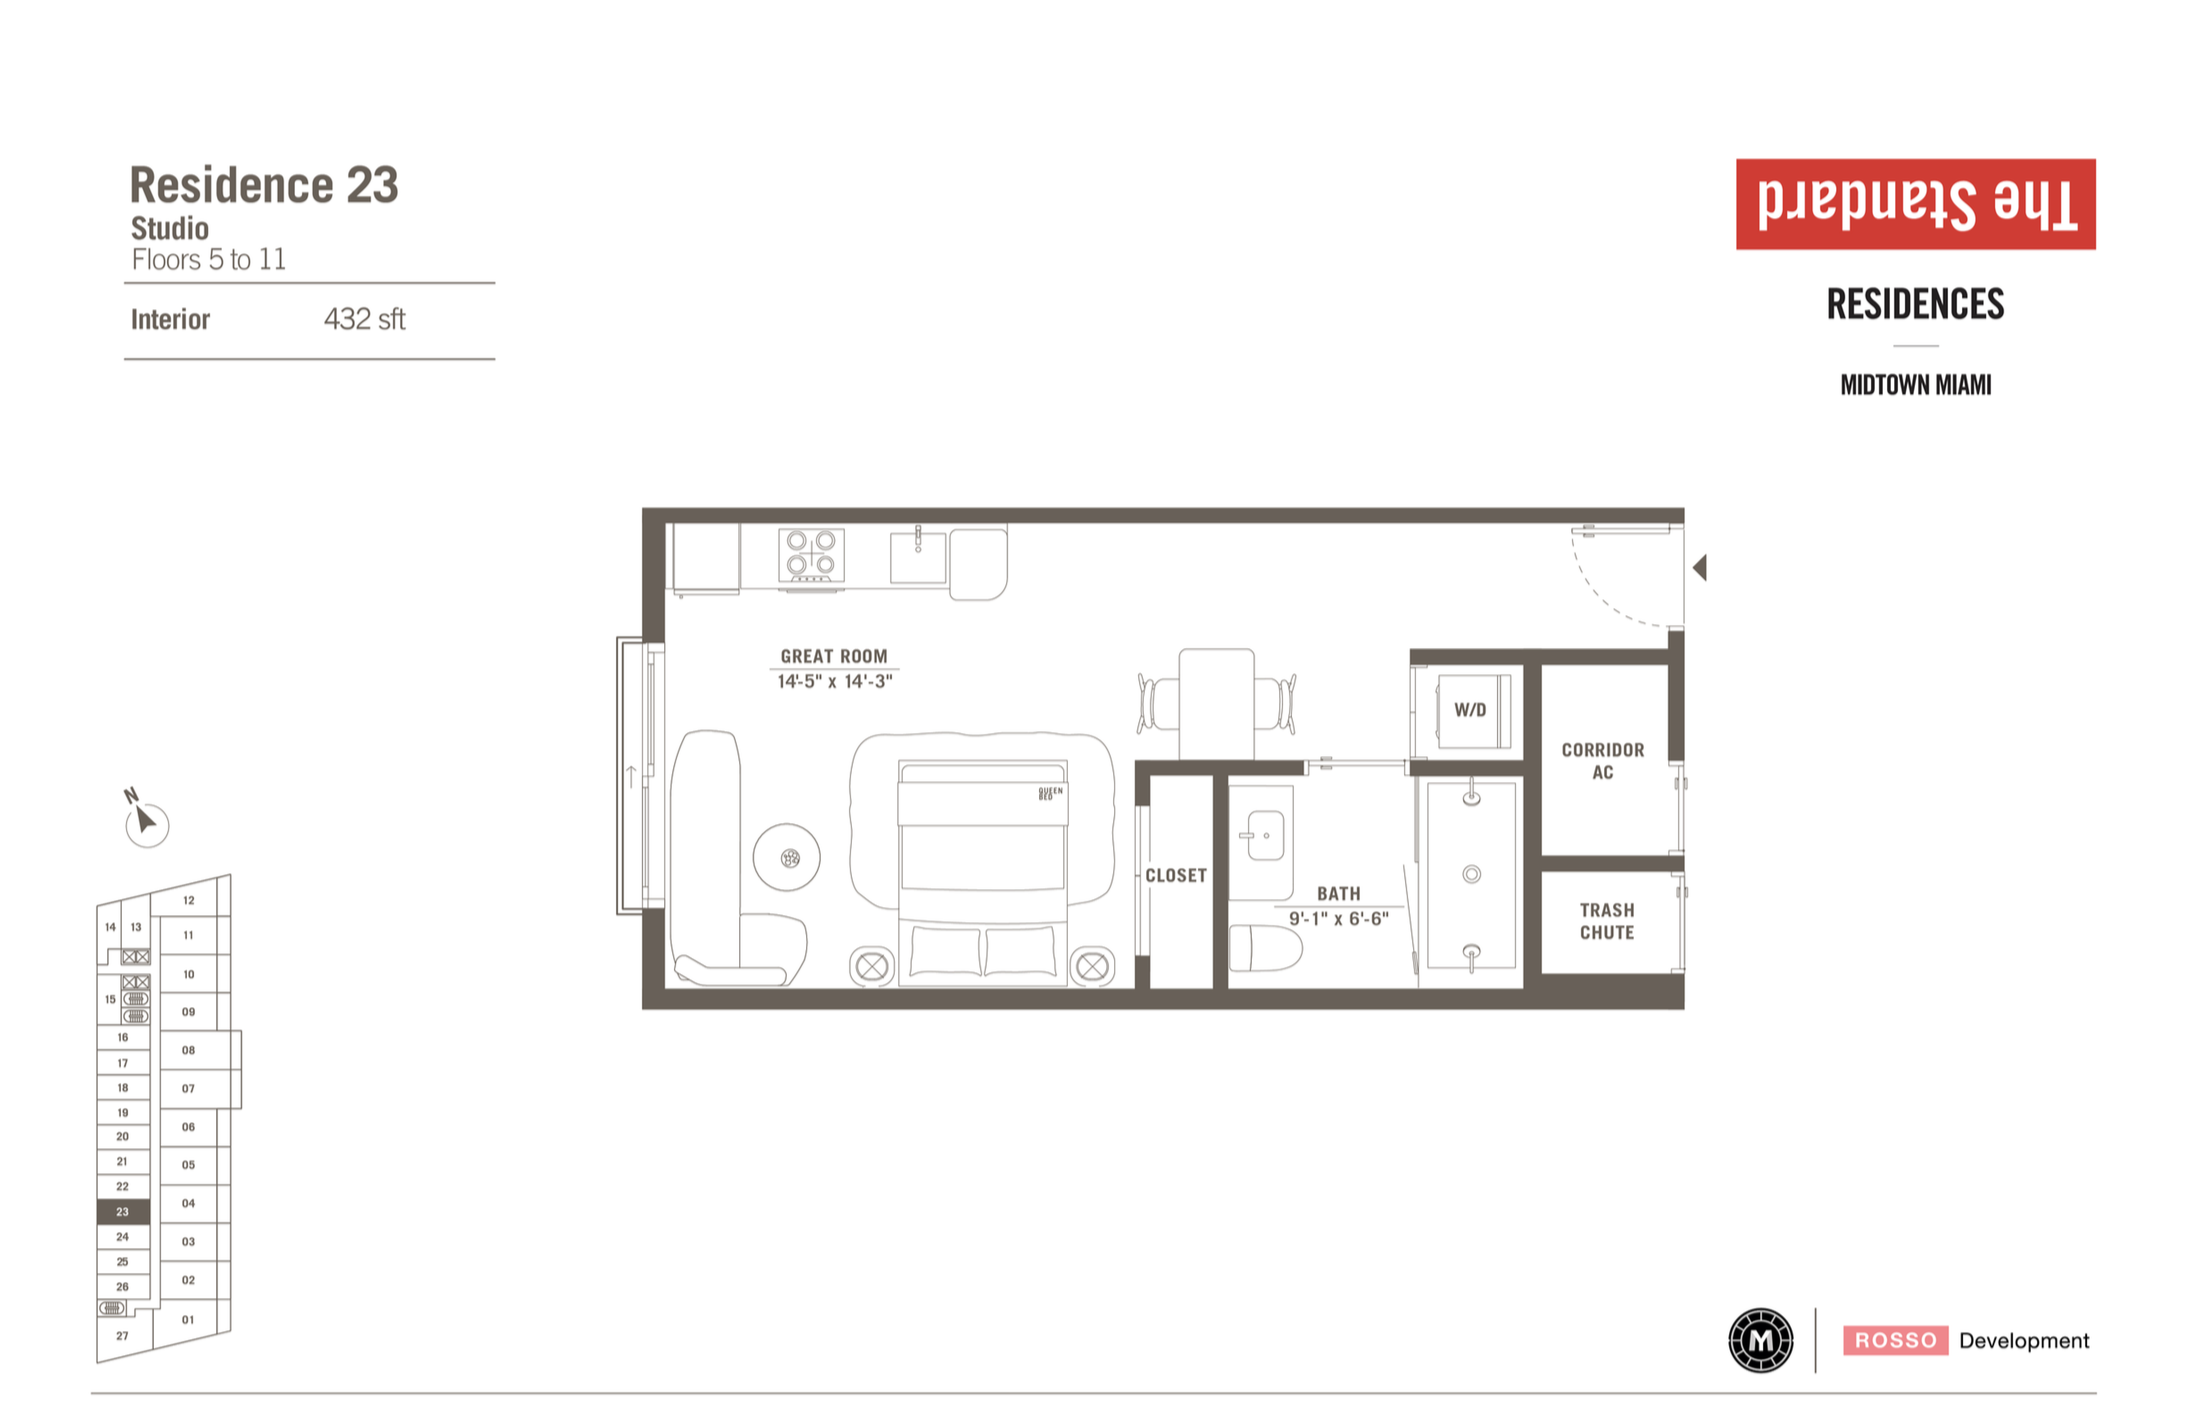 The Standard Residences | Residence 23 | Studio | 432 SF | Floor 5-11